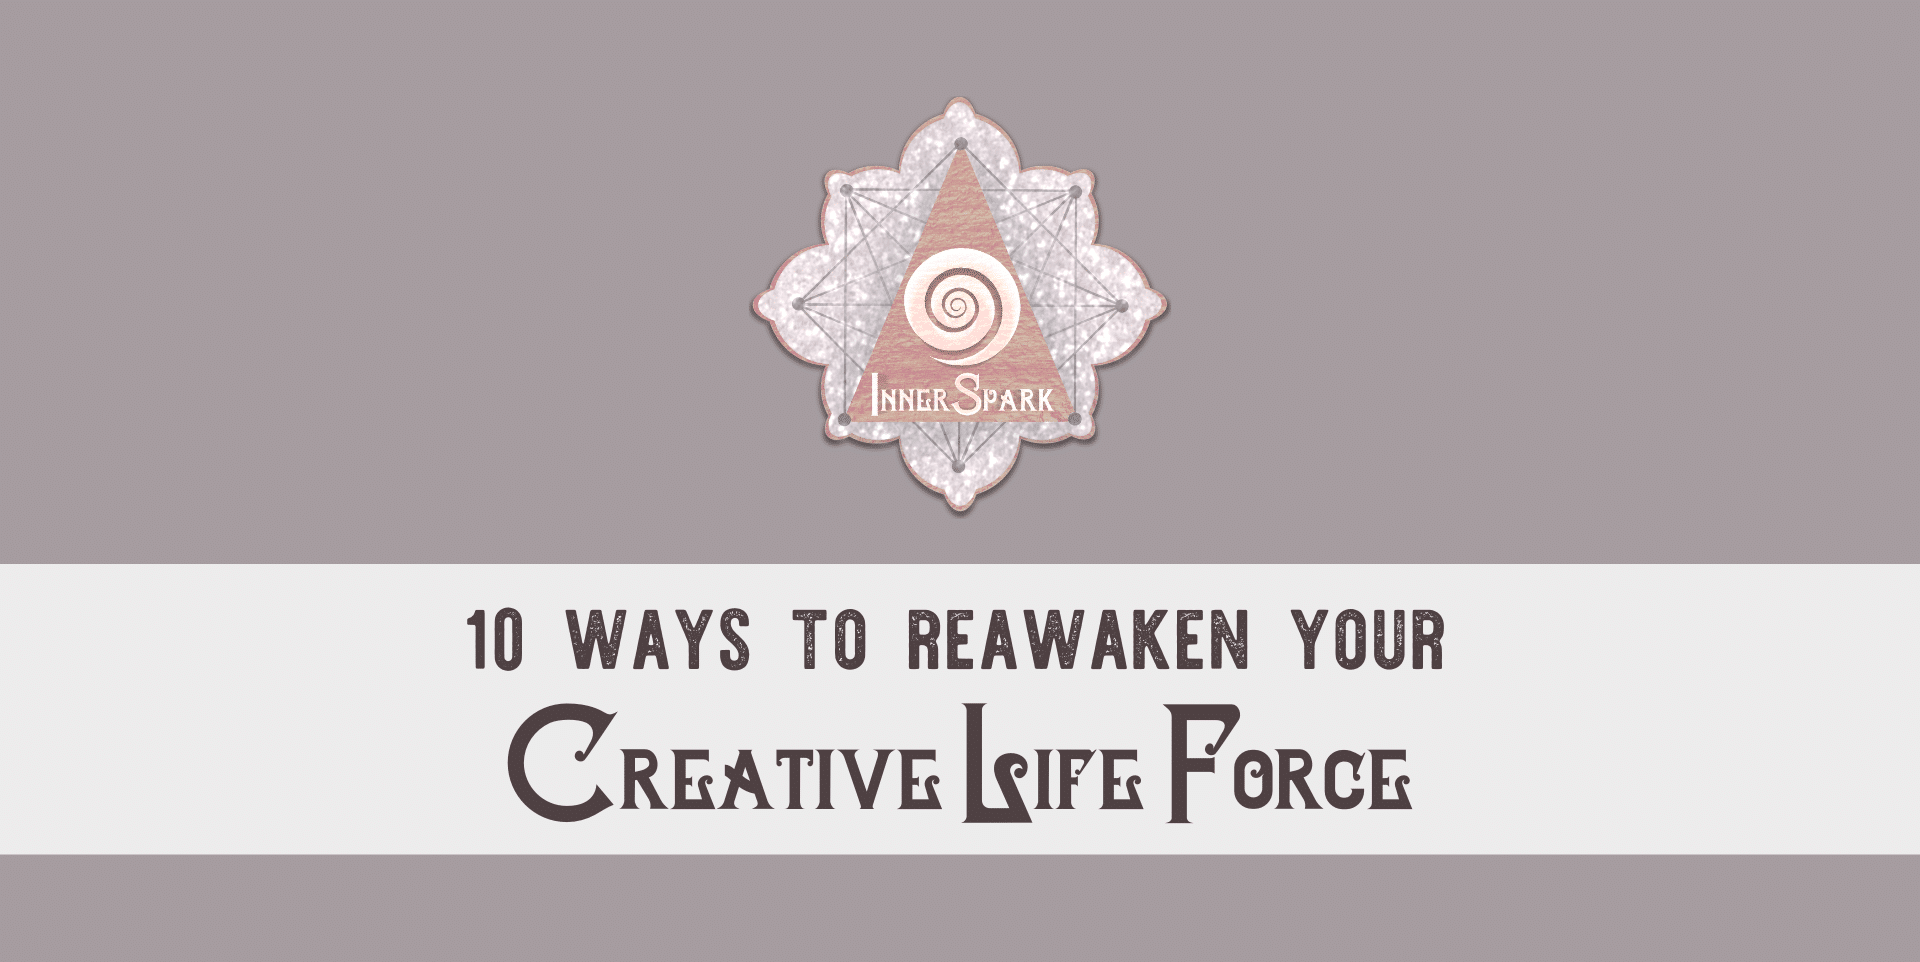 Awaken Your Creative Life Force